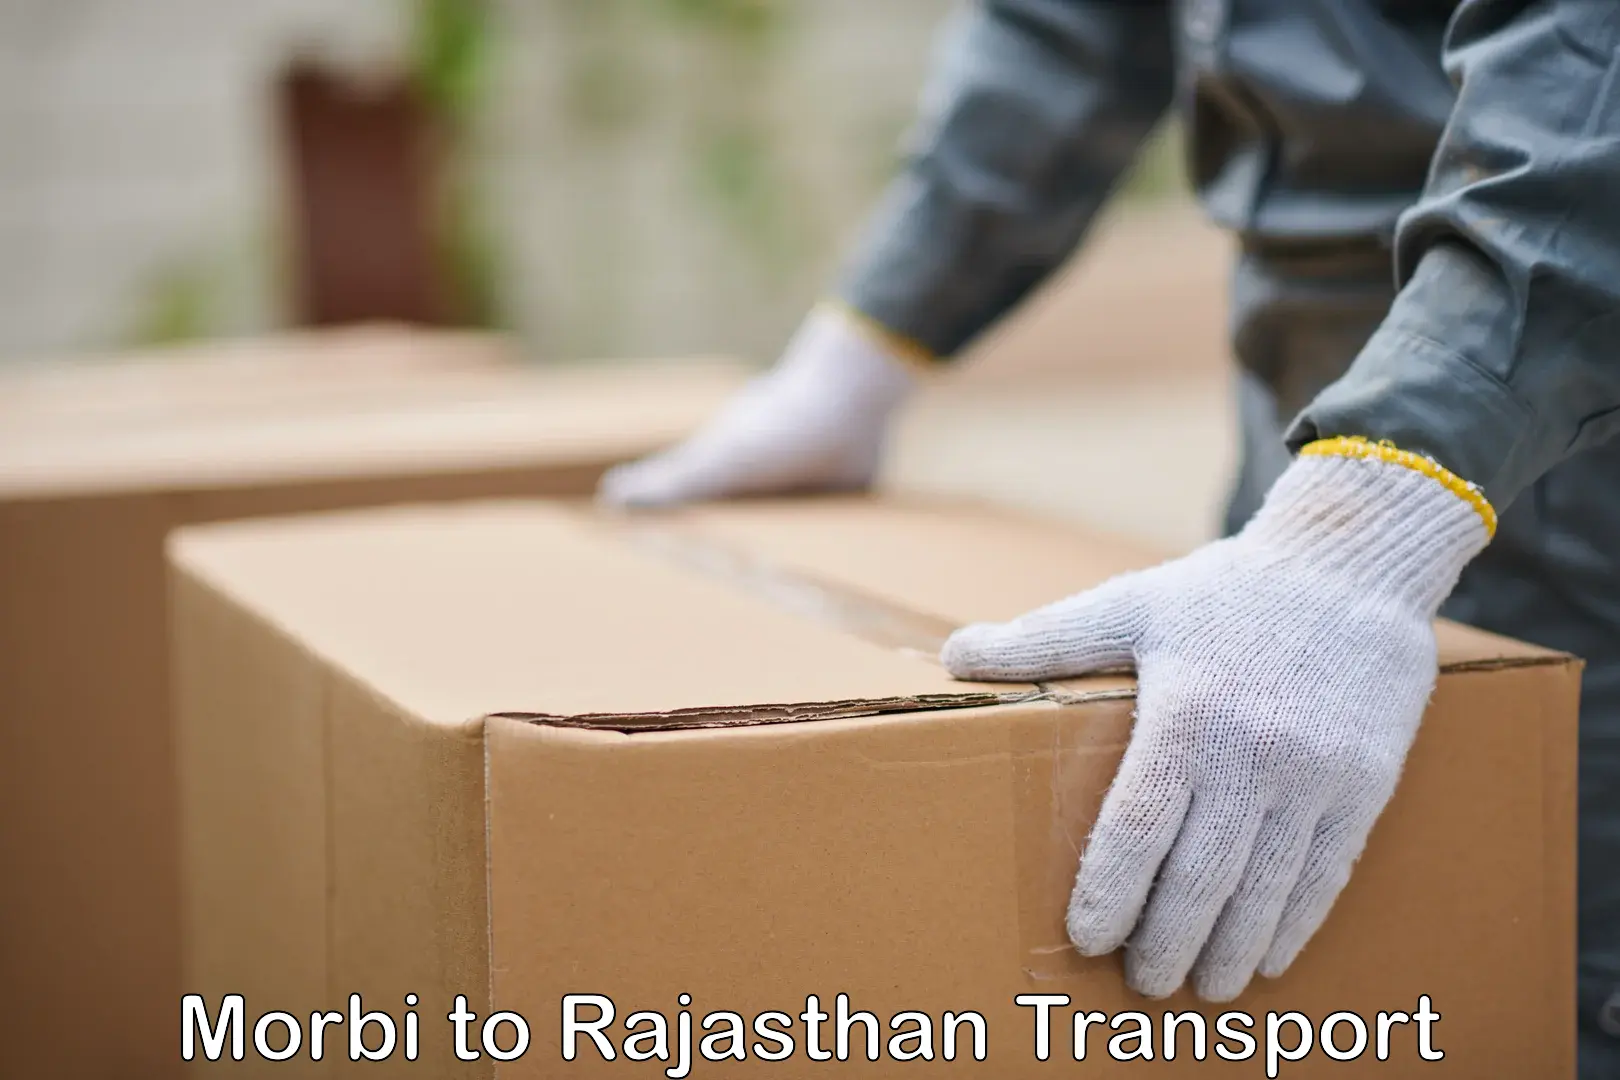 Furniture transport service Morbi to Rajasthan